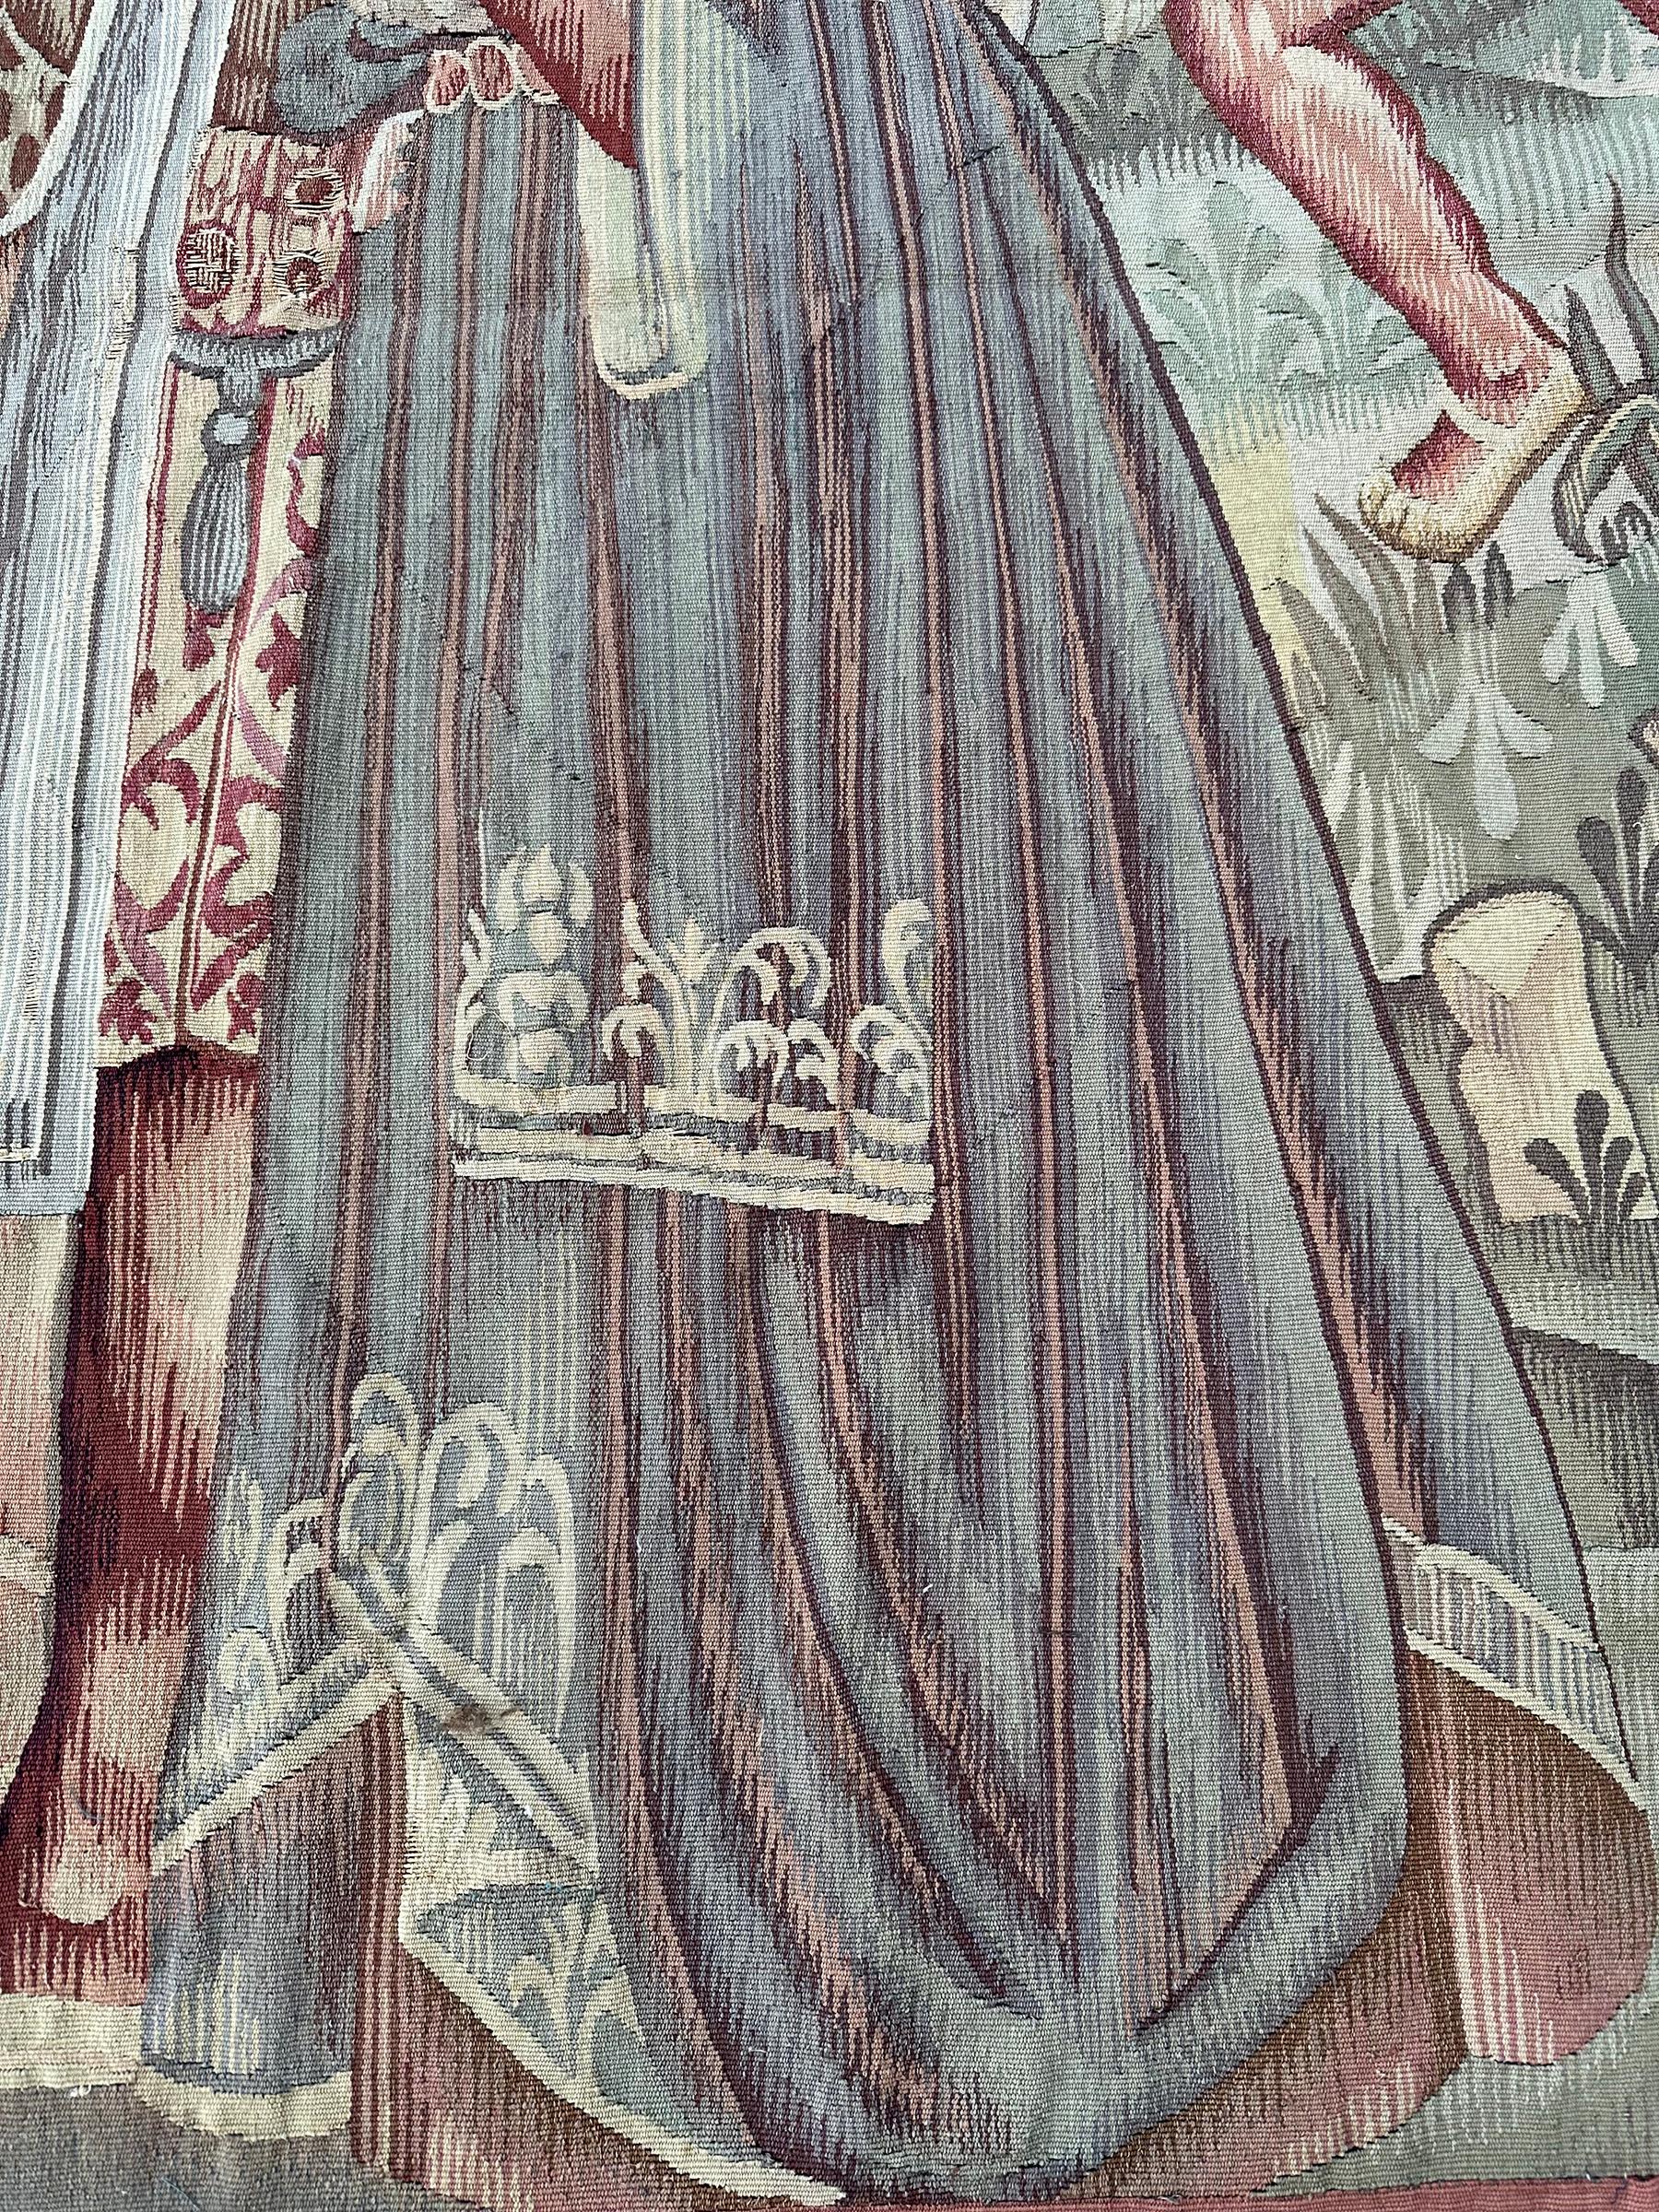 Antike Französisch Wandteppich Kunst & Handwerk Adlige 1890 Wolle & Seide 6x7 

183 x 206cm

Ein prächtiger antiker französischer Wandteppich, der eine Szene mit adligen Männern inmitten exotischer Früchte und Grünpflanzen zeigt. Schöne Farbgebung